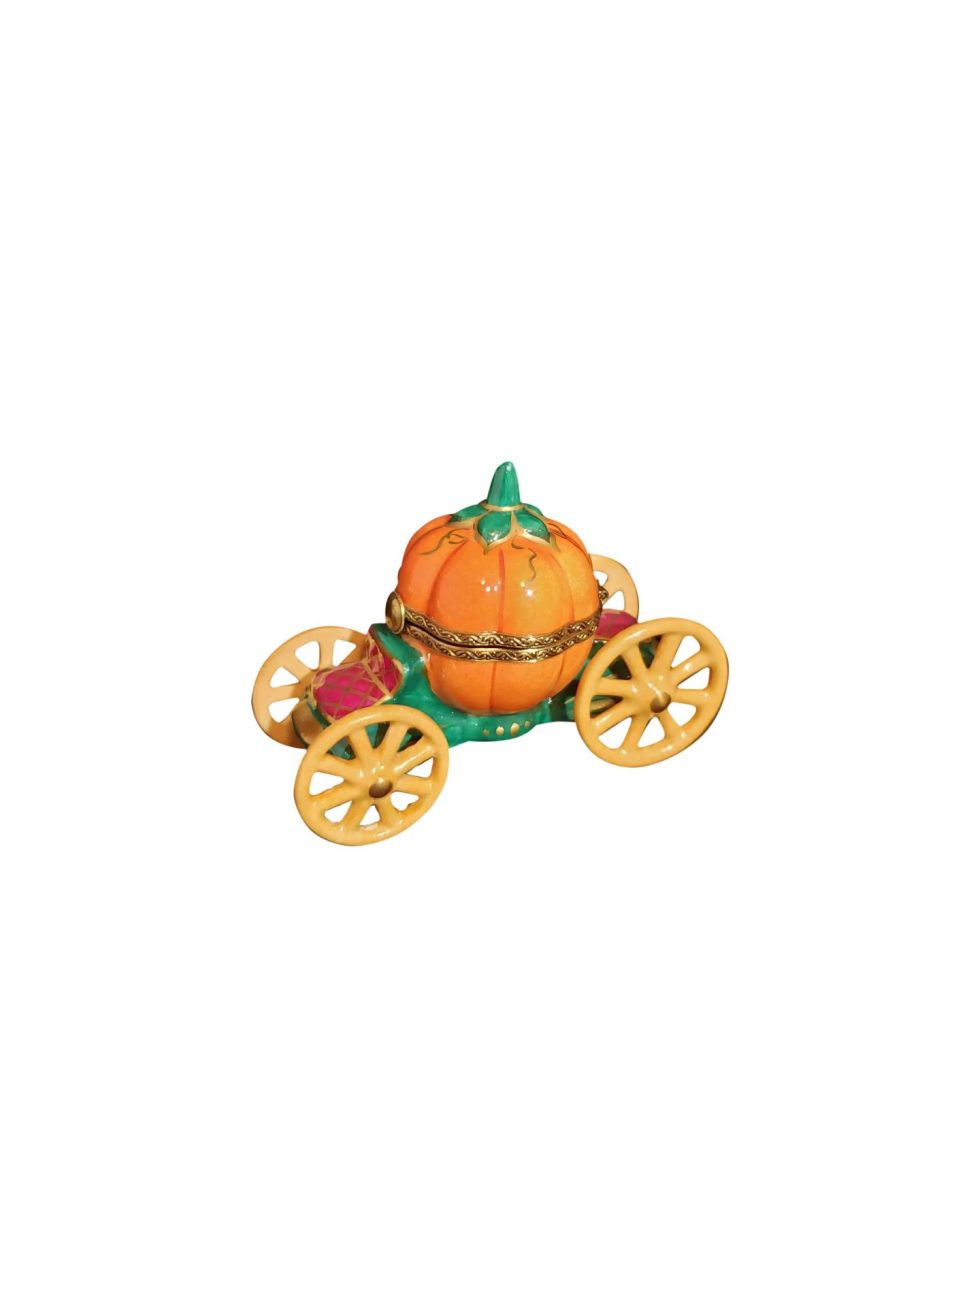 Lot #12332 – Limoges Cinderella Pumpkin Carriage Art Limoges